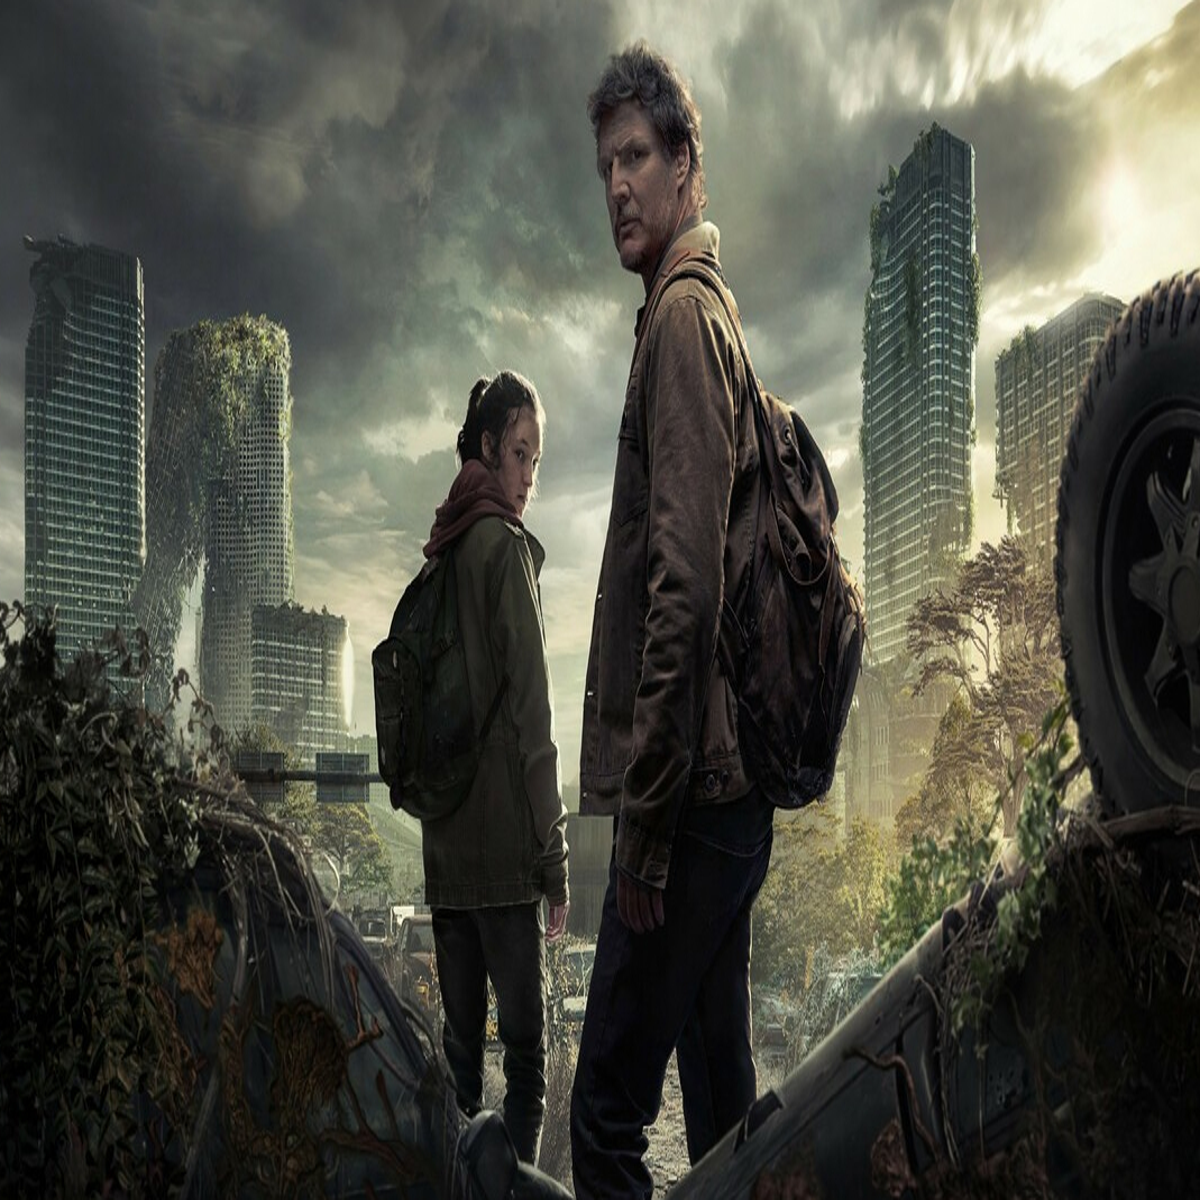 The Last of Us da HBO: 2º episódio é dirigido por Druckmann